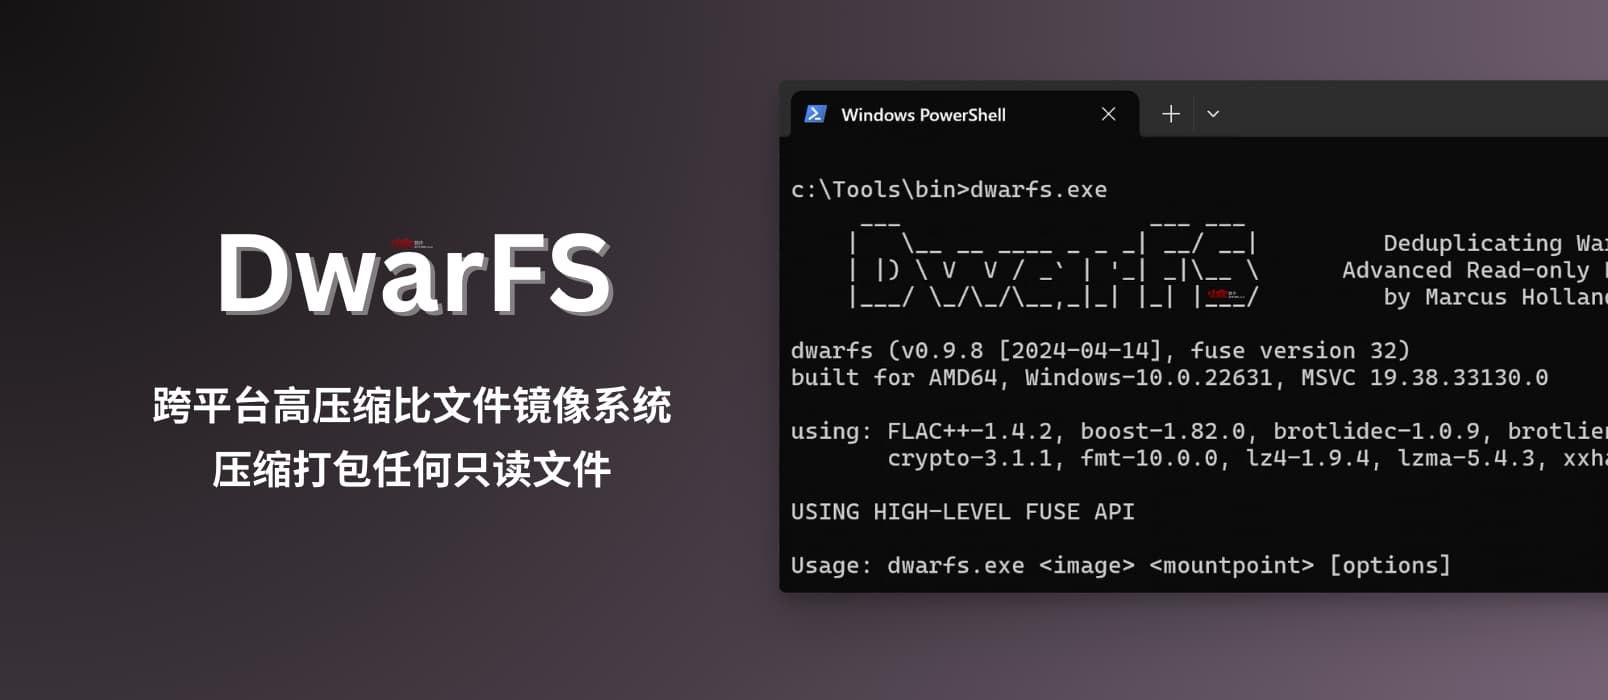 DwarFS - 跨平台、快速、高压缩比文件镜像系统：非常适合压缩打包海量小文件